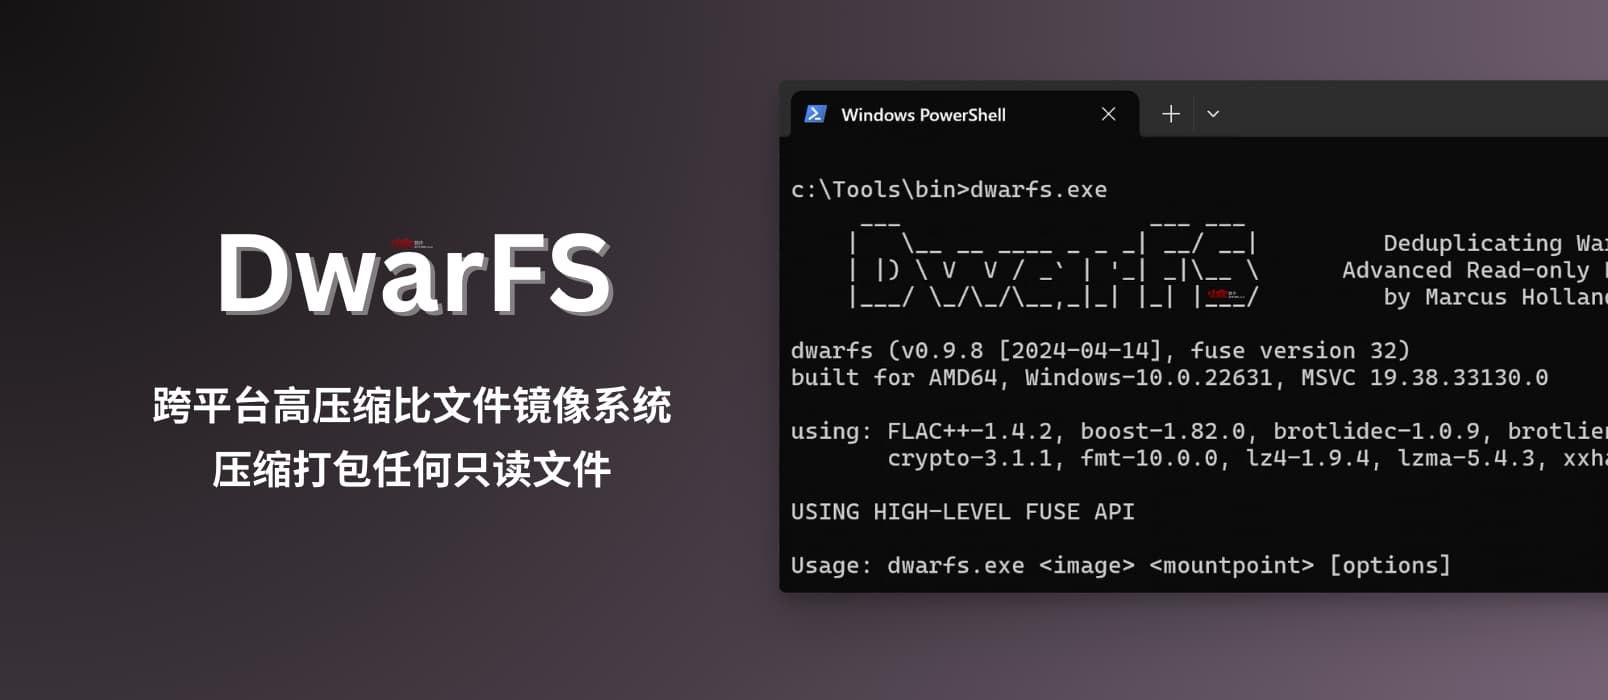 DwarFS - 跨平台、快速、高压缩比文件镜像系统：非常适合压缩打包海量小文件